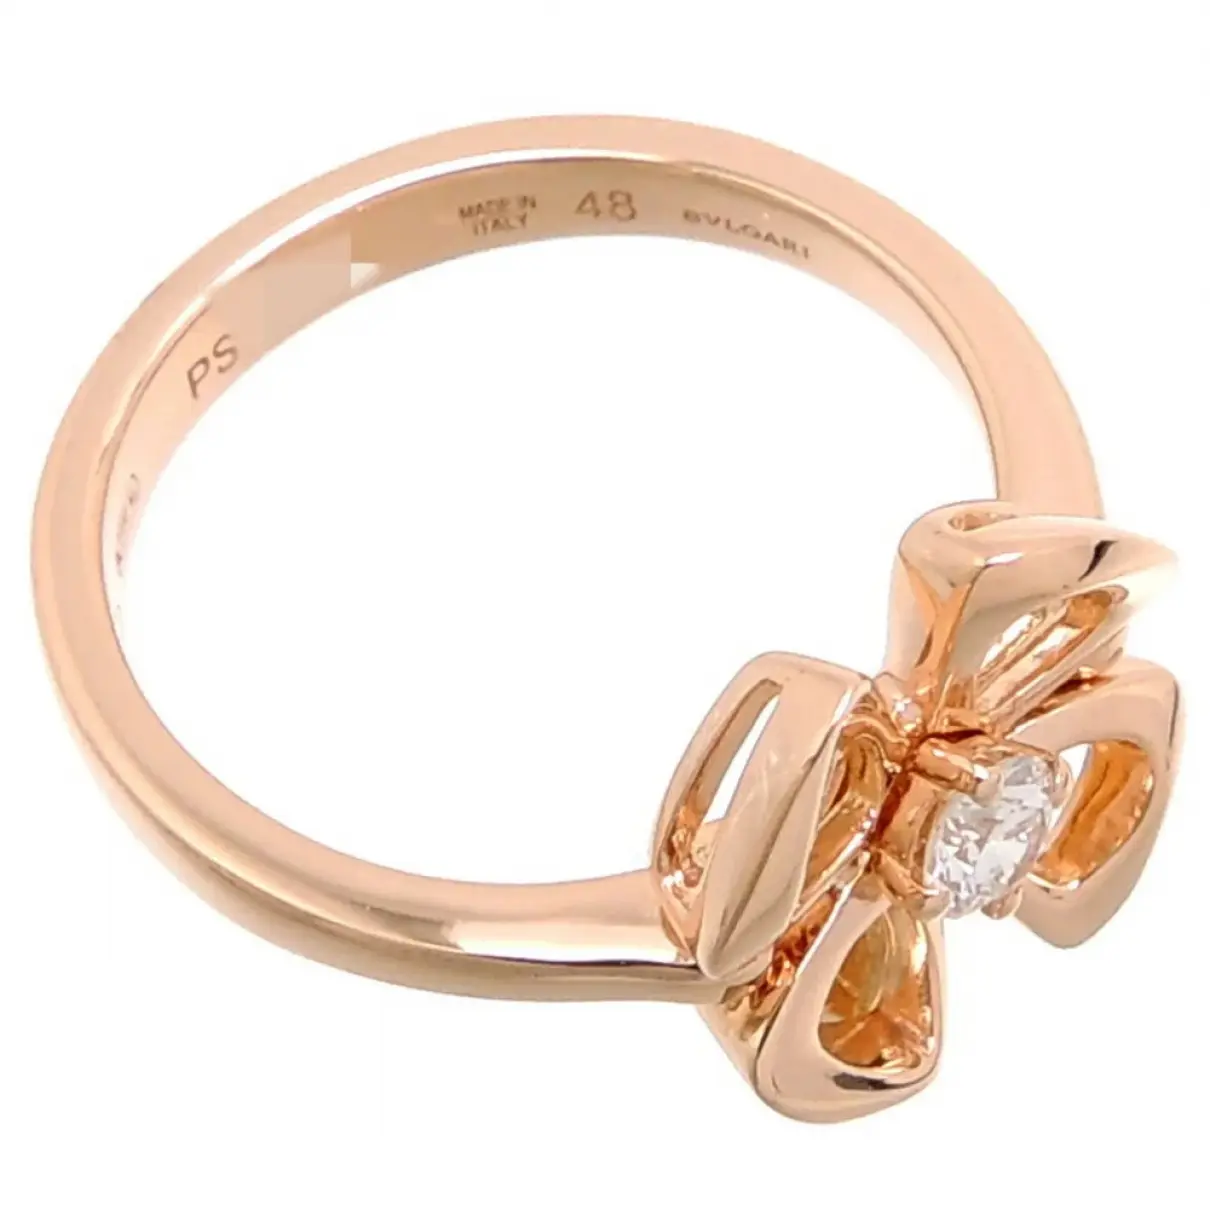 Buy Bvlgari Pink gold ring online